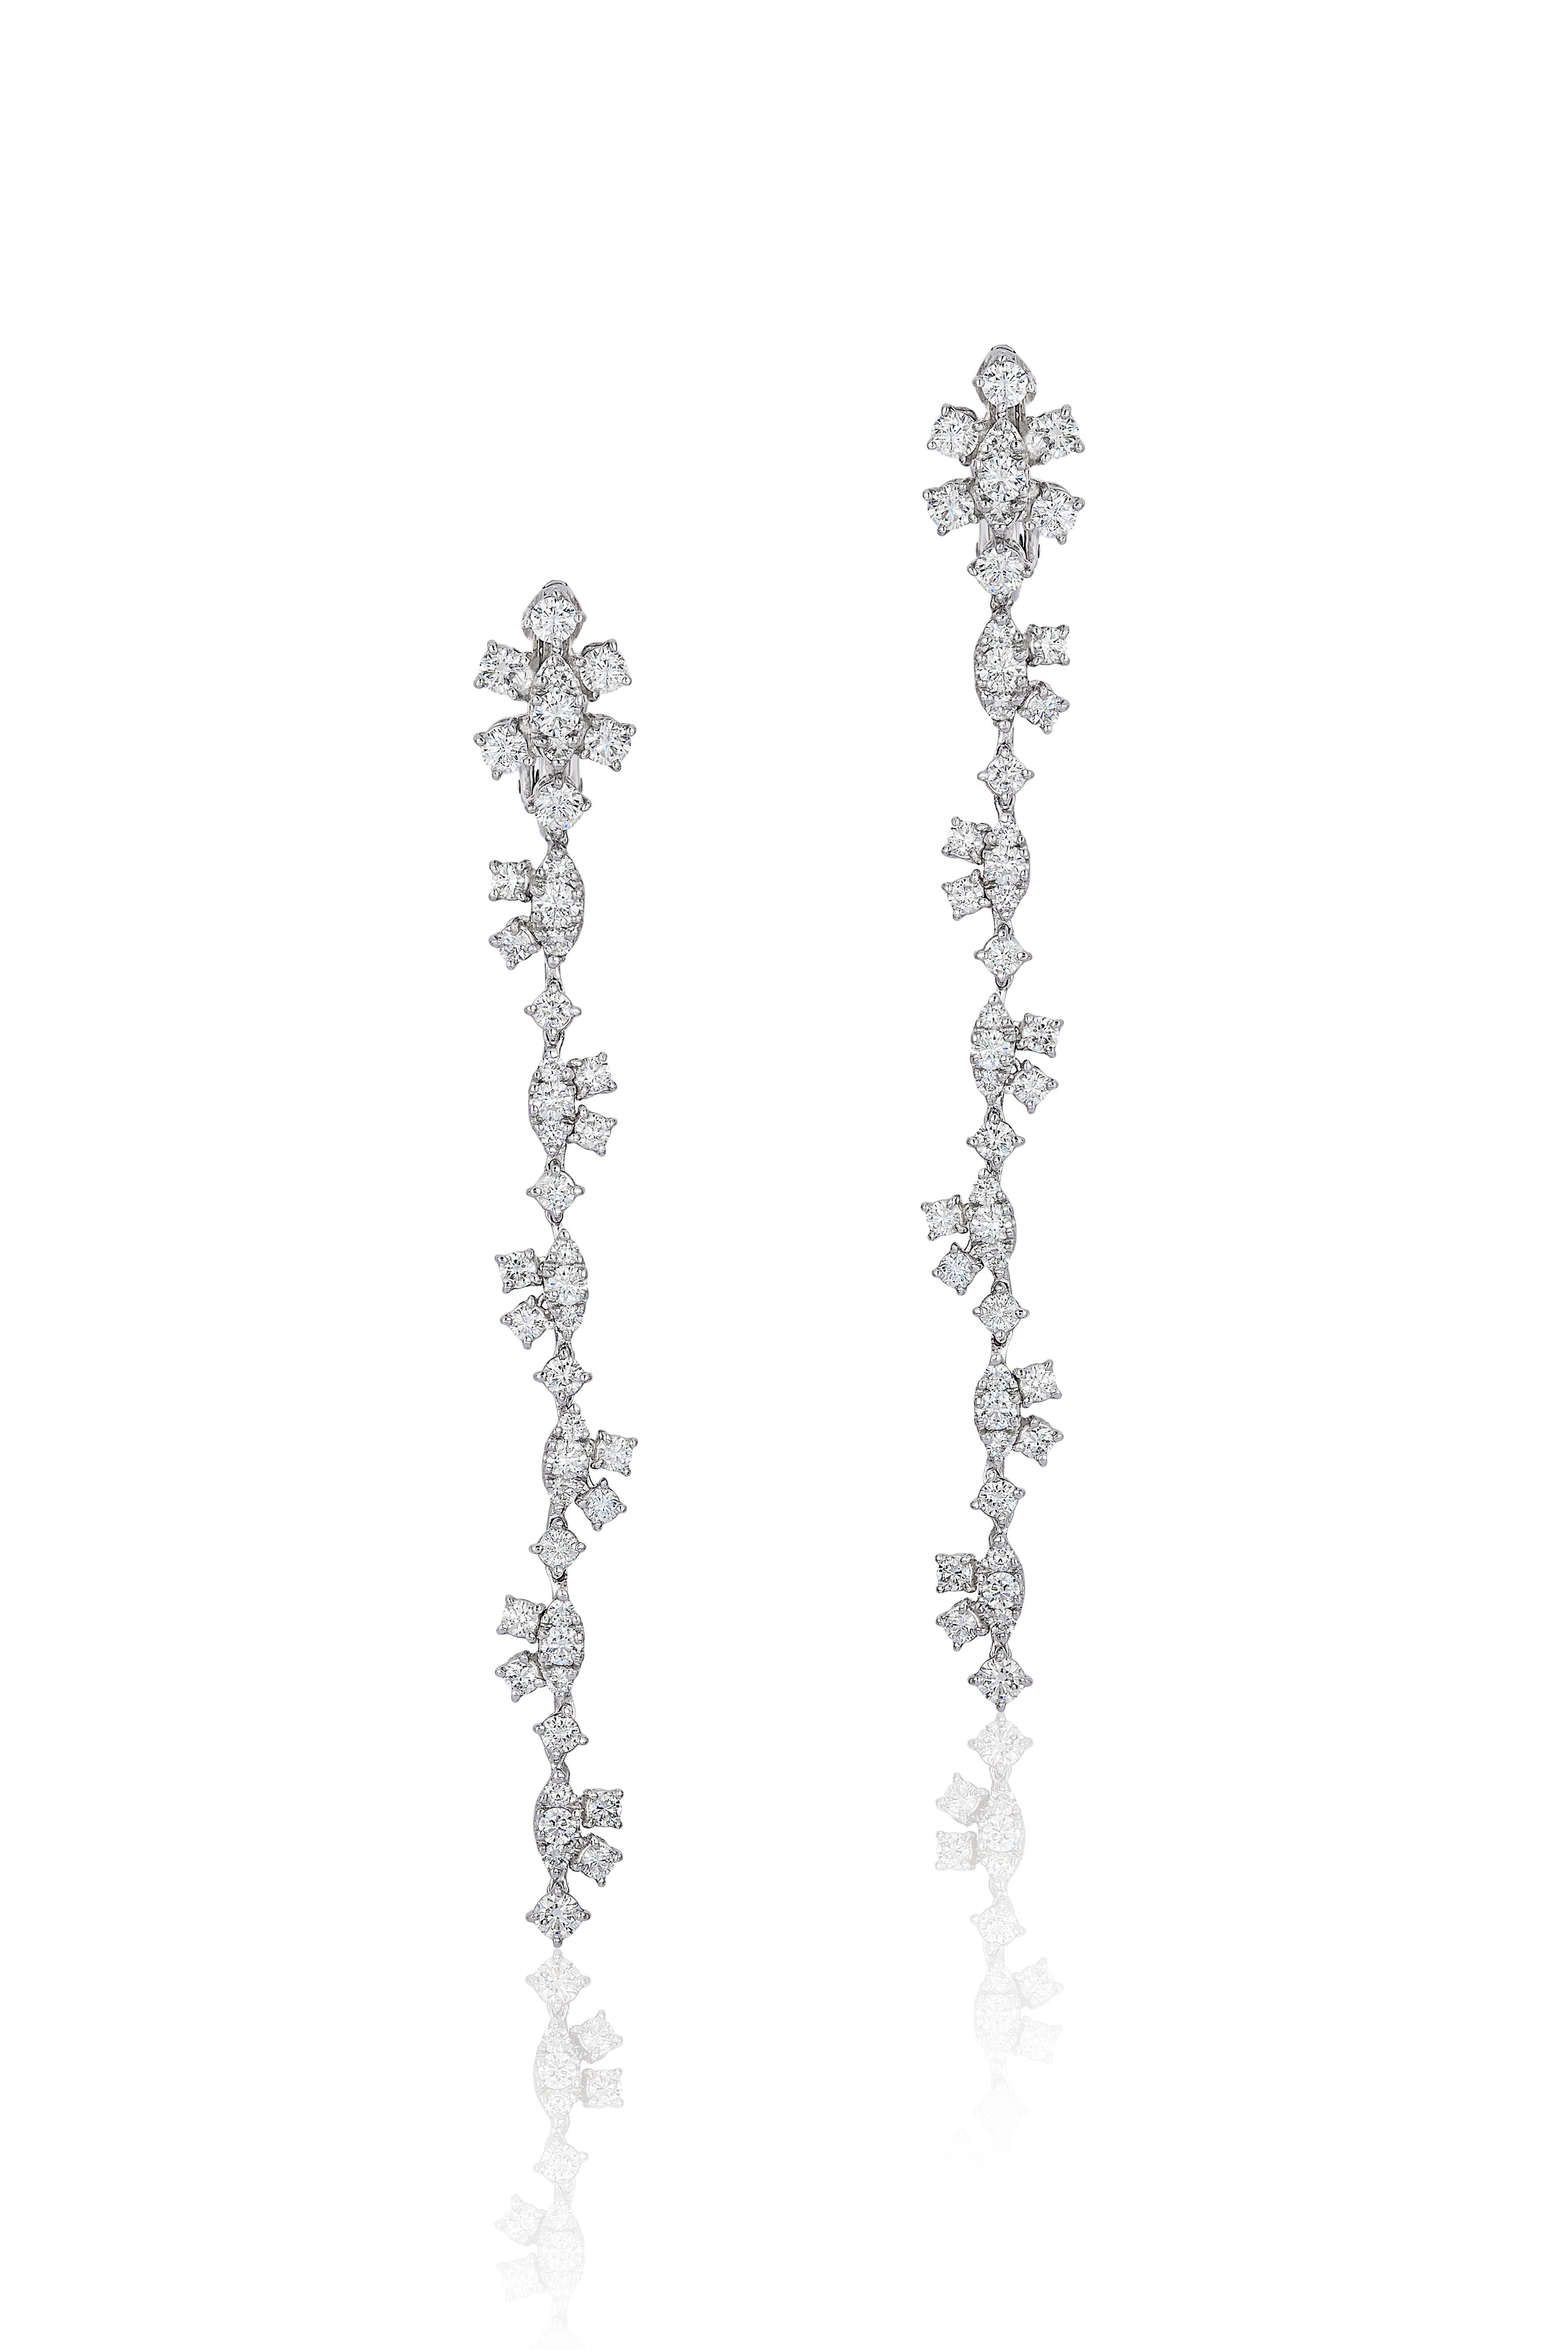 Andreoli Diamond 18 Karat White Gold Earrings

These earrings feature:
- 4.86 Carat Diamond
- 18K White Gold
- Made In Italy